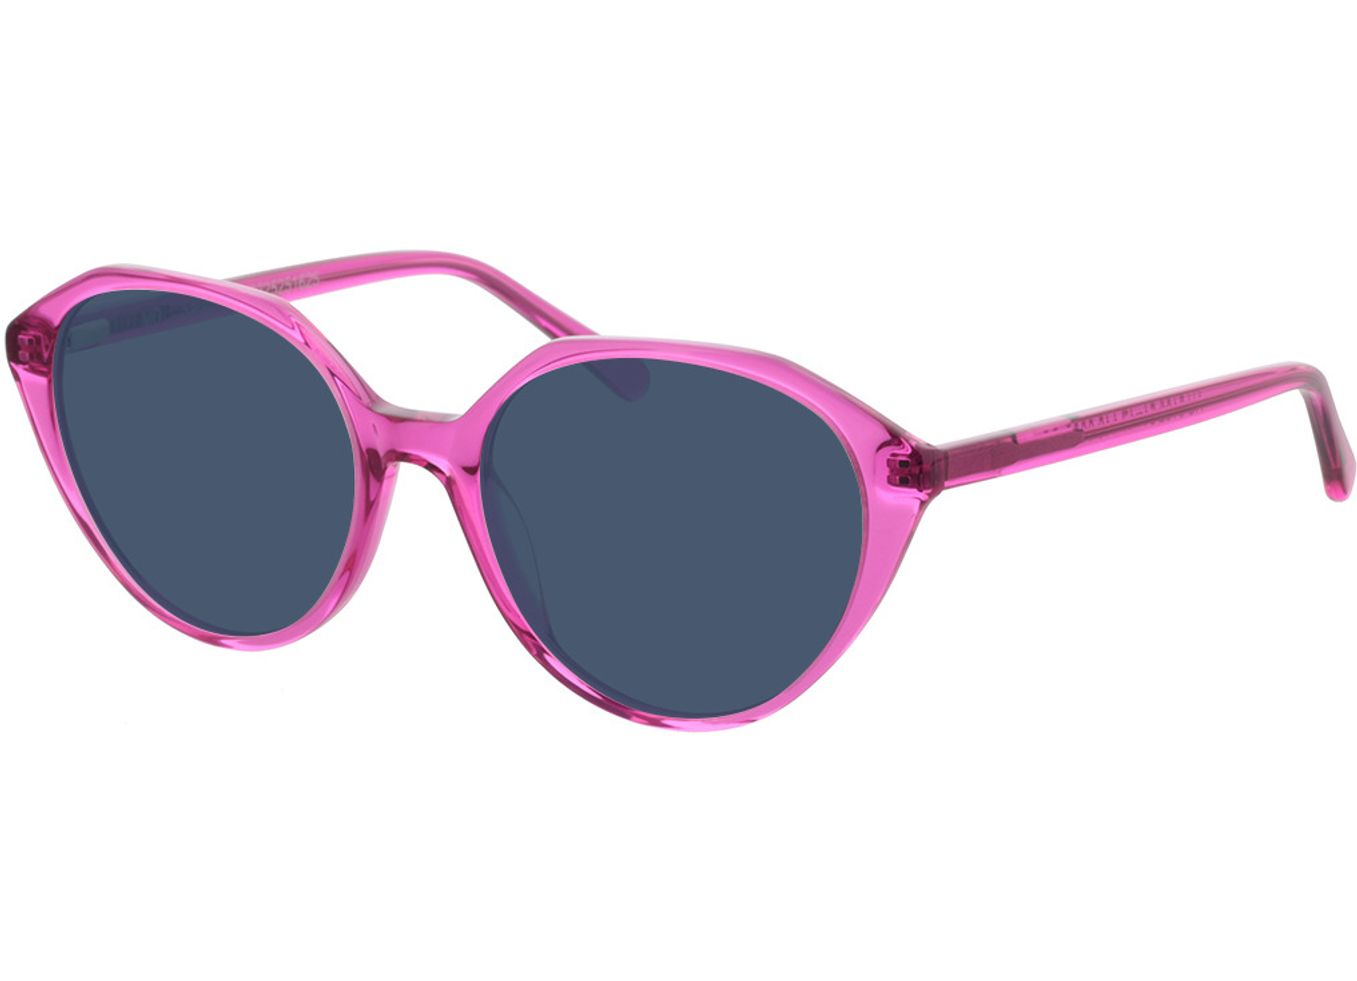 Sabine - pink Sonnenbrille mit Sehstärke, Vollrand, geometric von Brille24 Collection